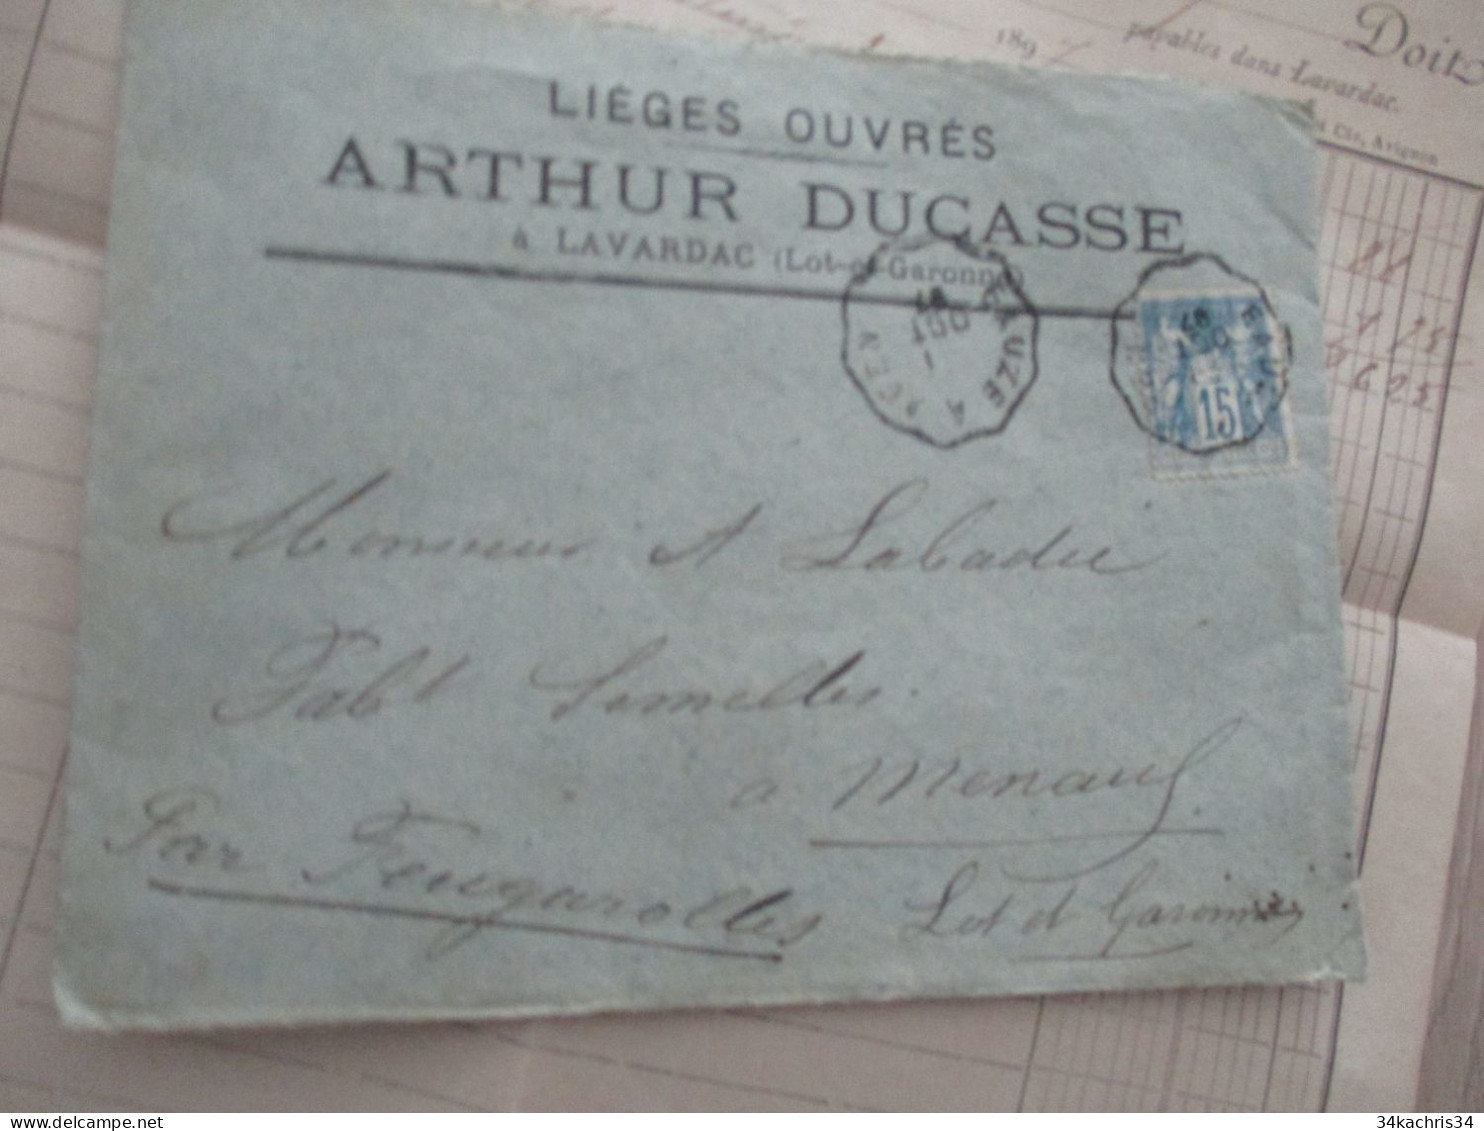 Facture + Enveloppe Pub Publicité 1897 Ducasse Arthur à Lavardac Lot Et Garonne Lièges Ouvrés - Agriculture